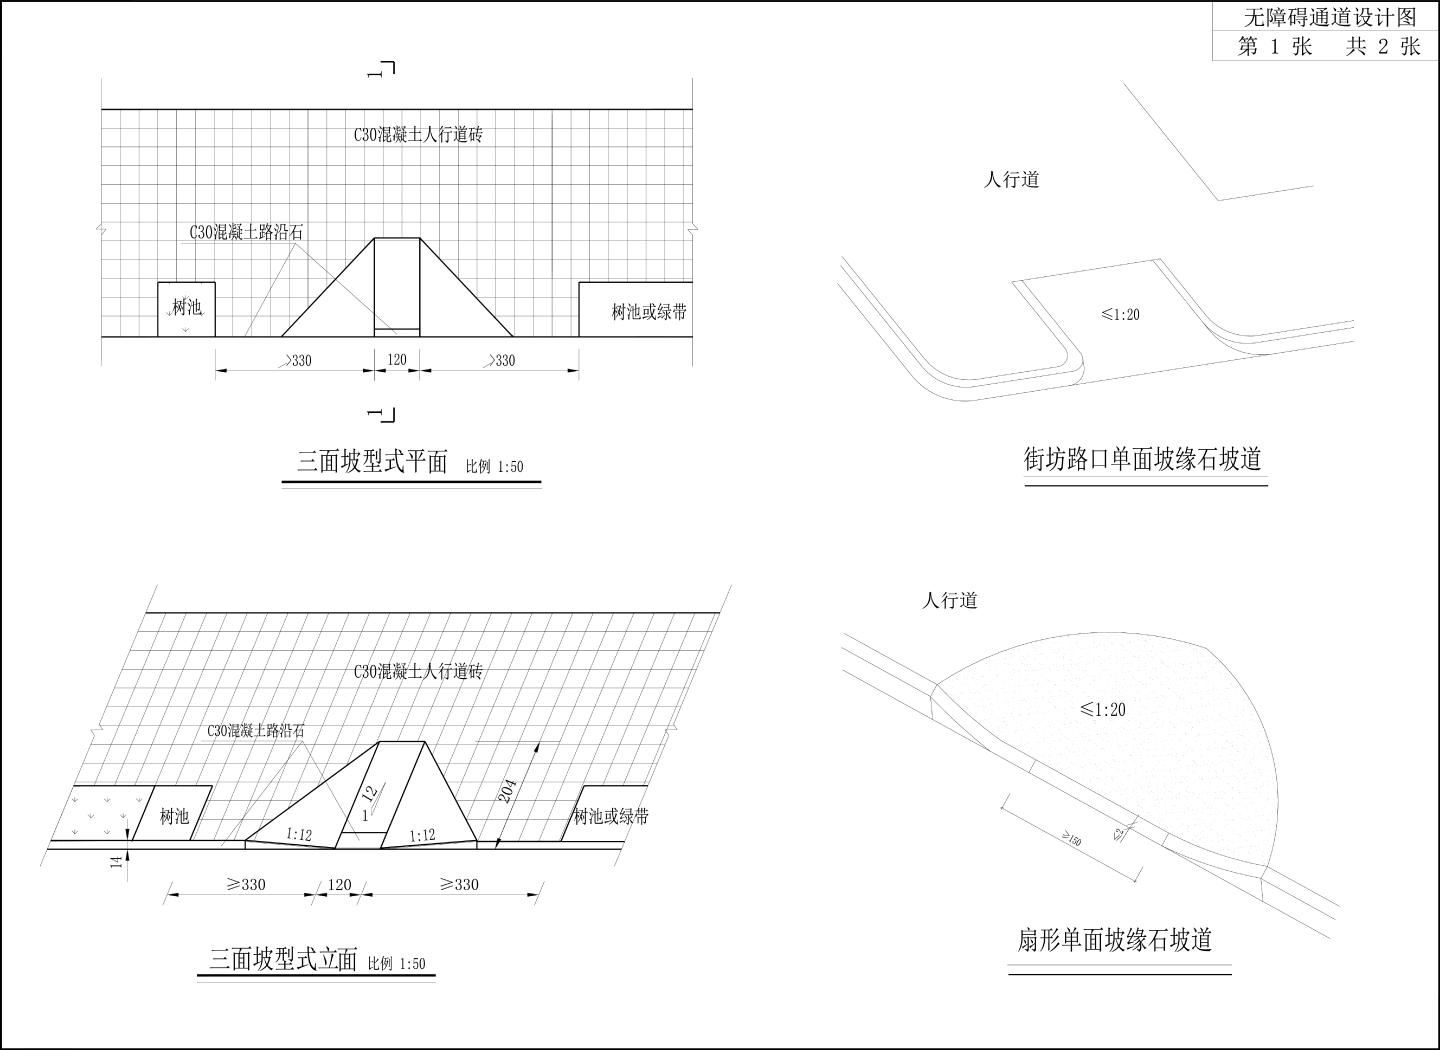 马厂“775”项目道路工程-无障碍通道设计图标准CAD图.dwg